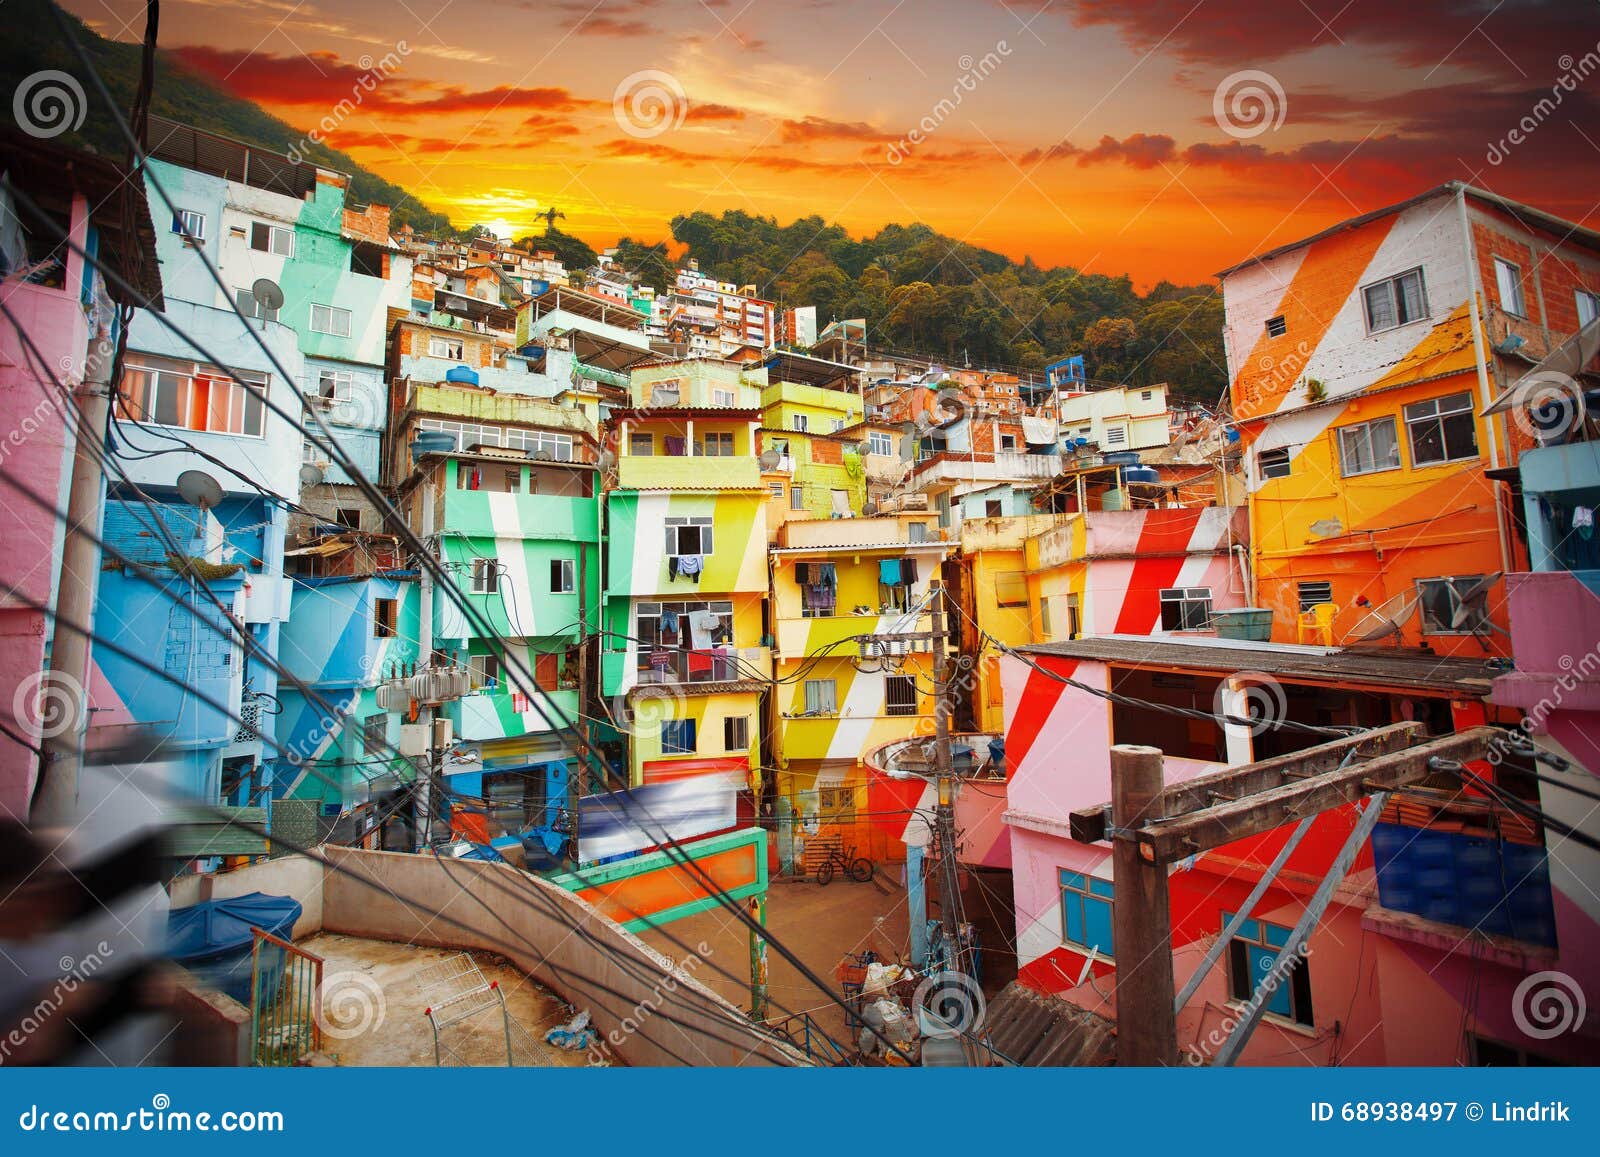 rio de janeiro downtown and favela